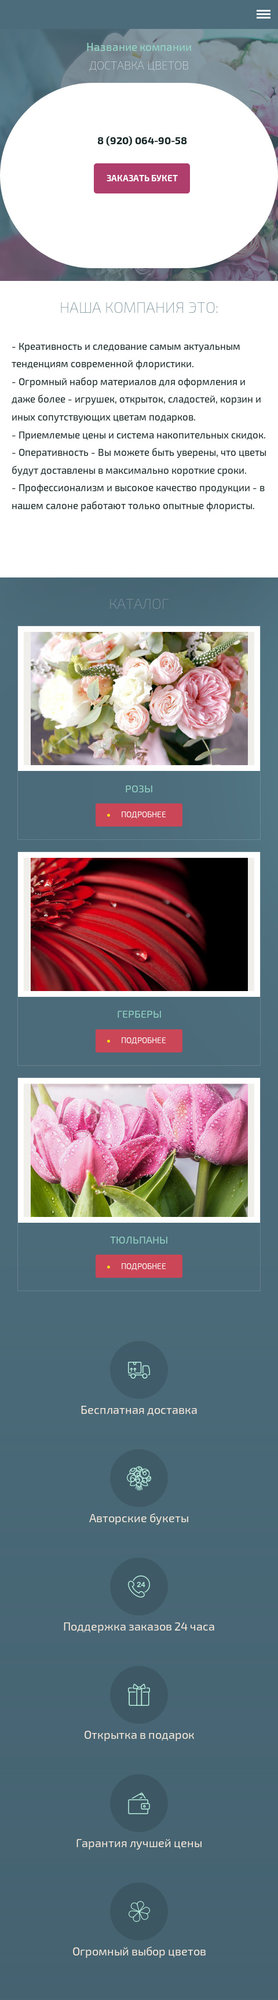 Готовый Сайт-Бизнес № 1997531 - каталог цветов (Мобильная версия)